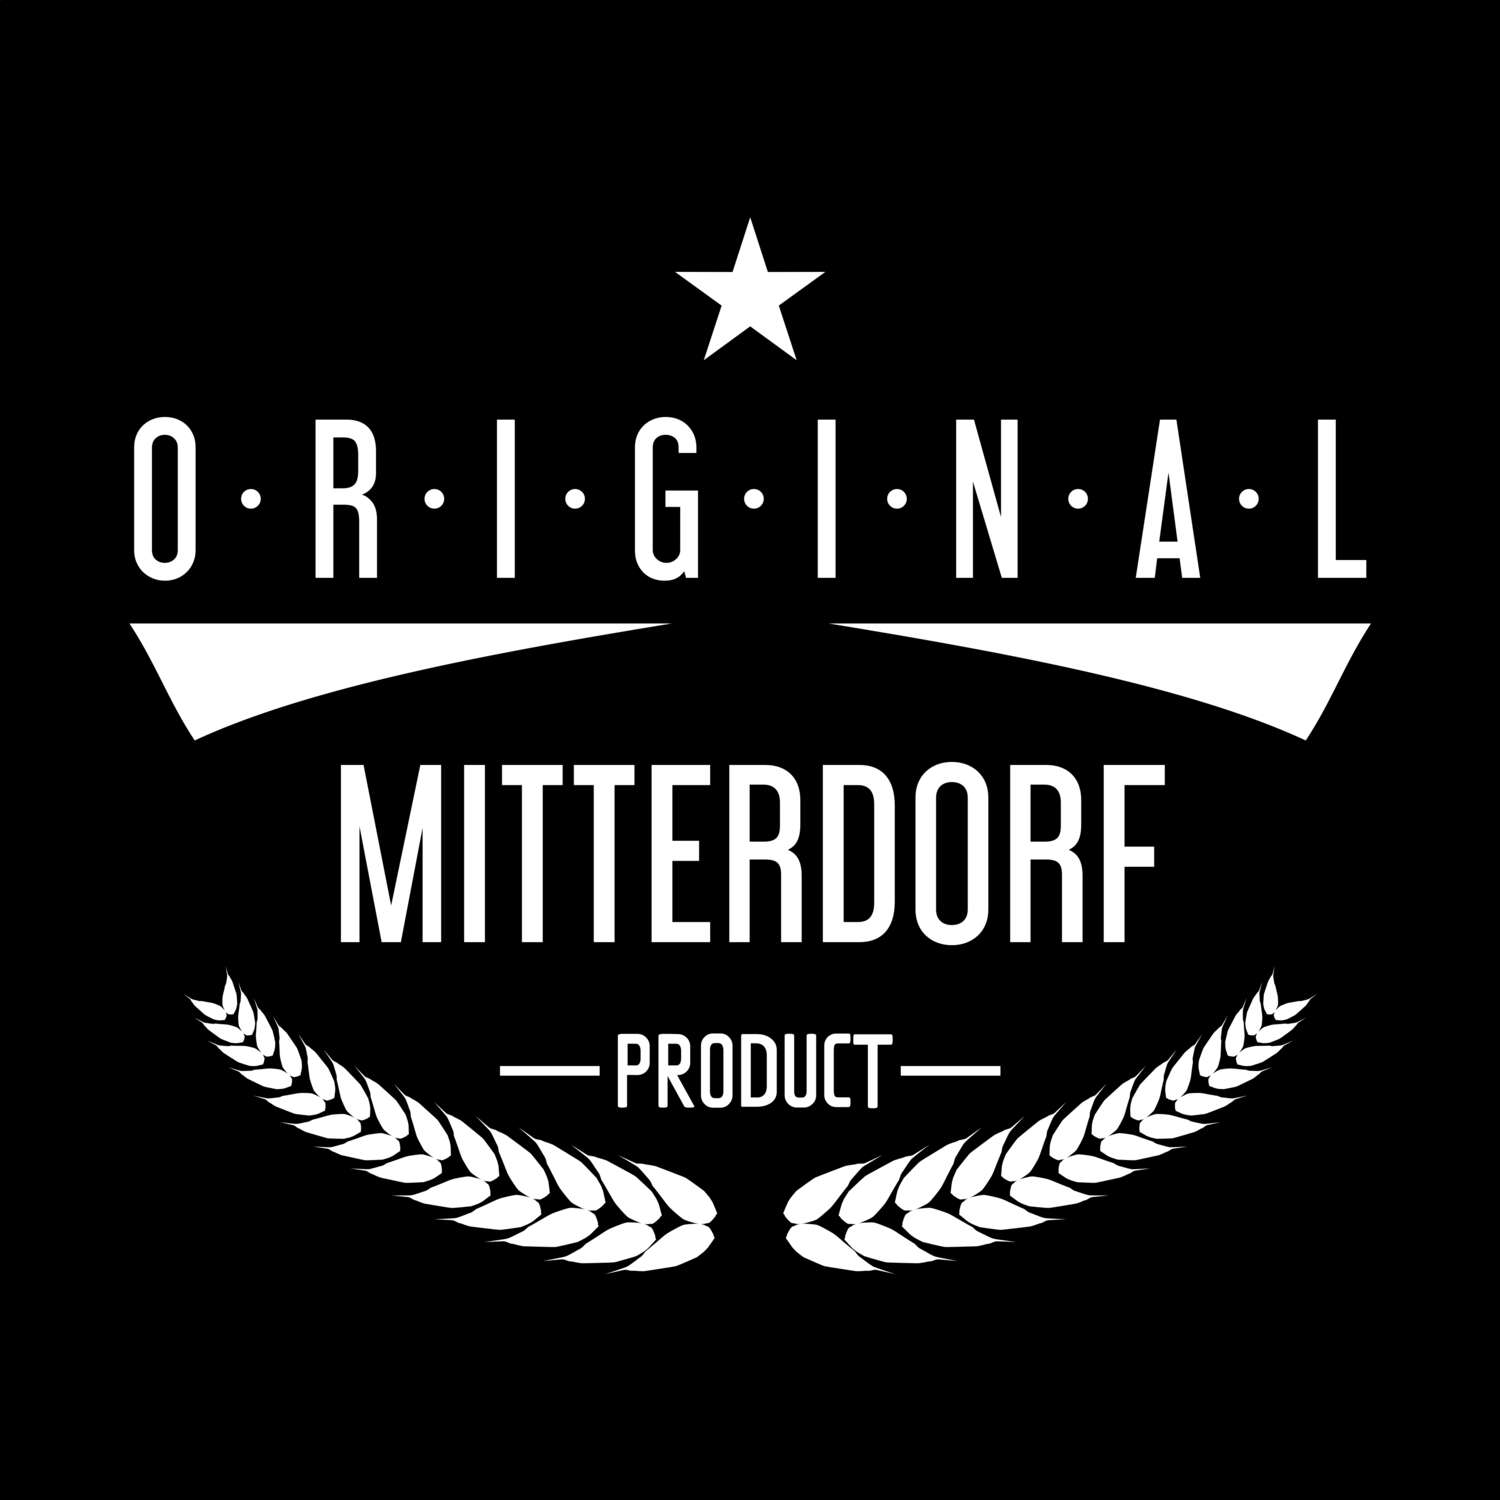 Mitterdorf T-Shirt »Original Product«